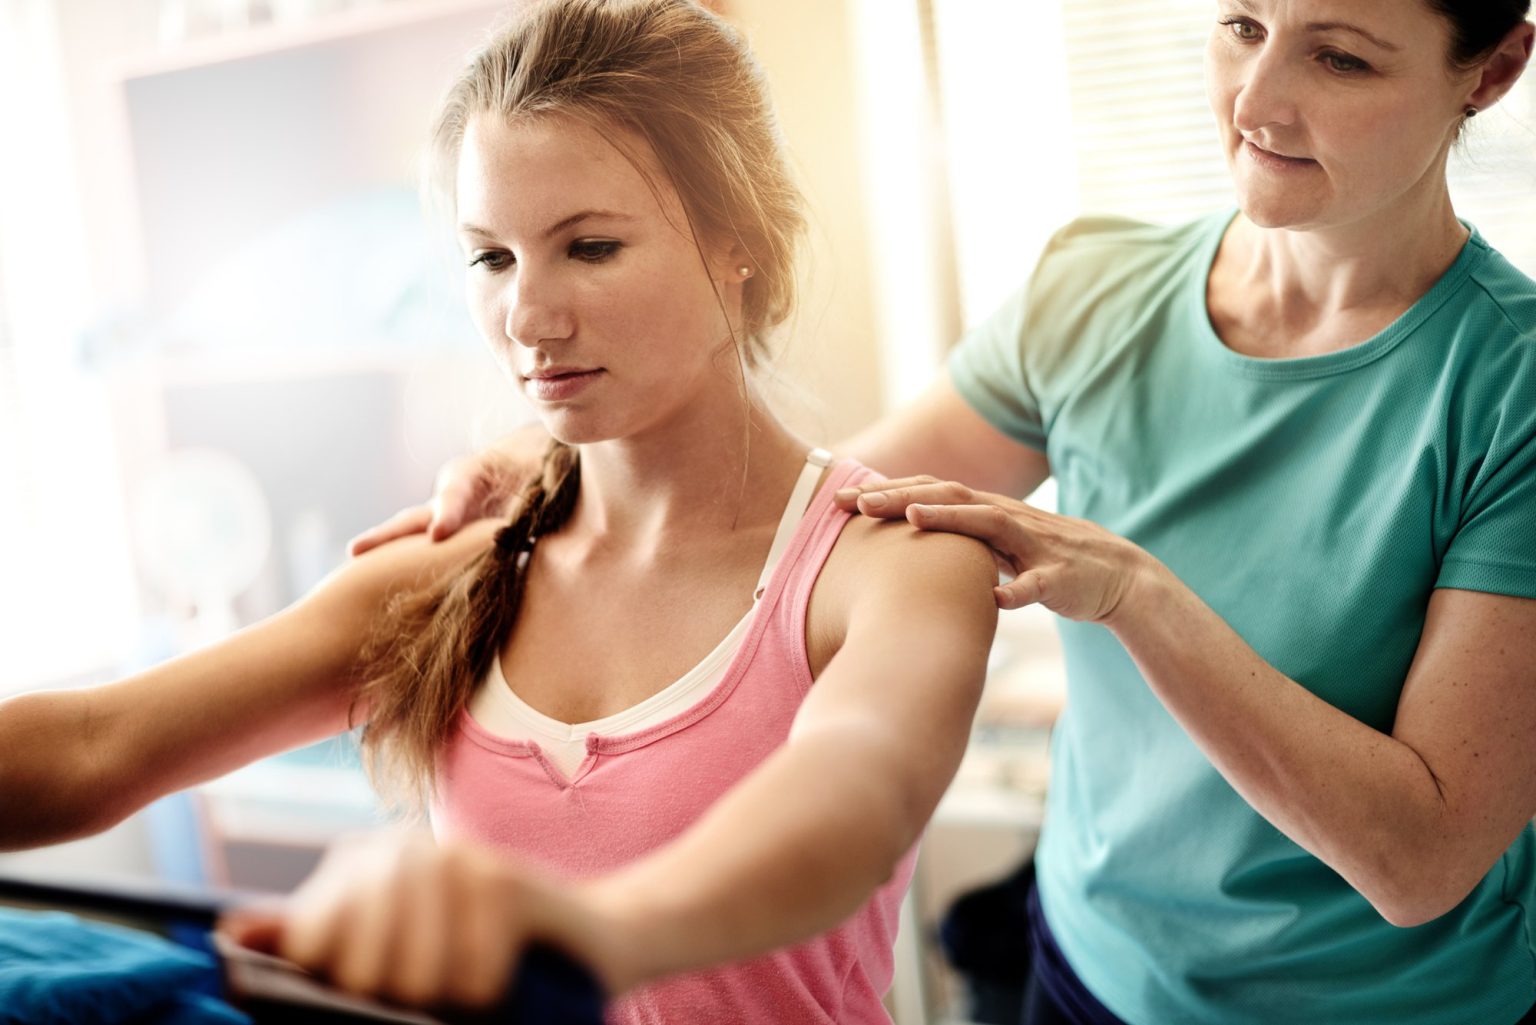 “De fysiotherapeut helpt je om te leren wat voor jou werkt als je reuma